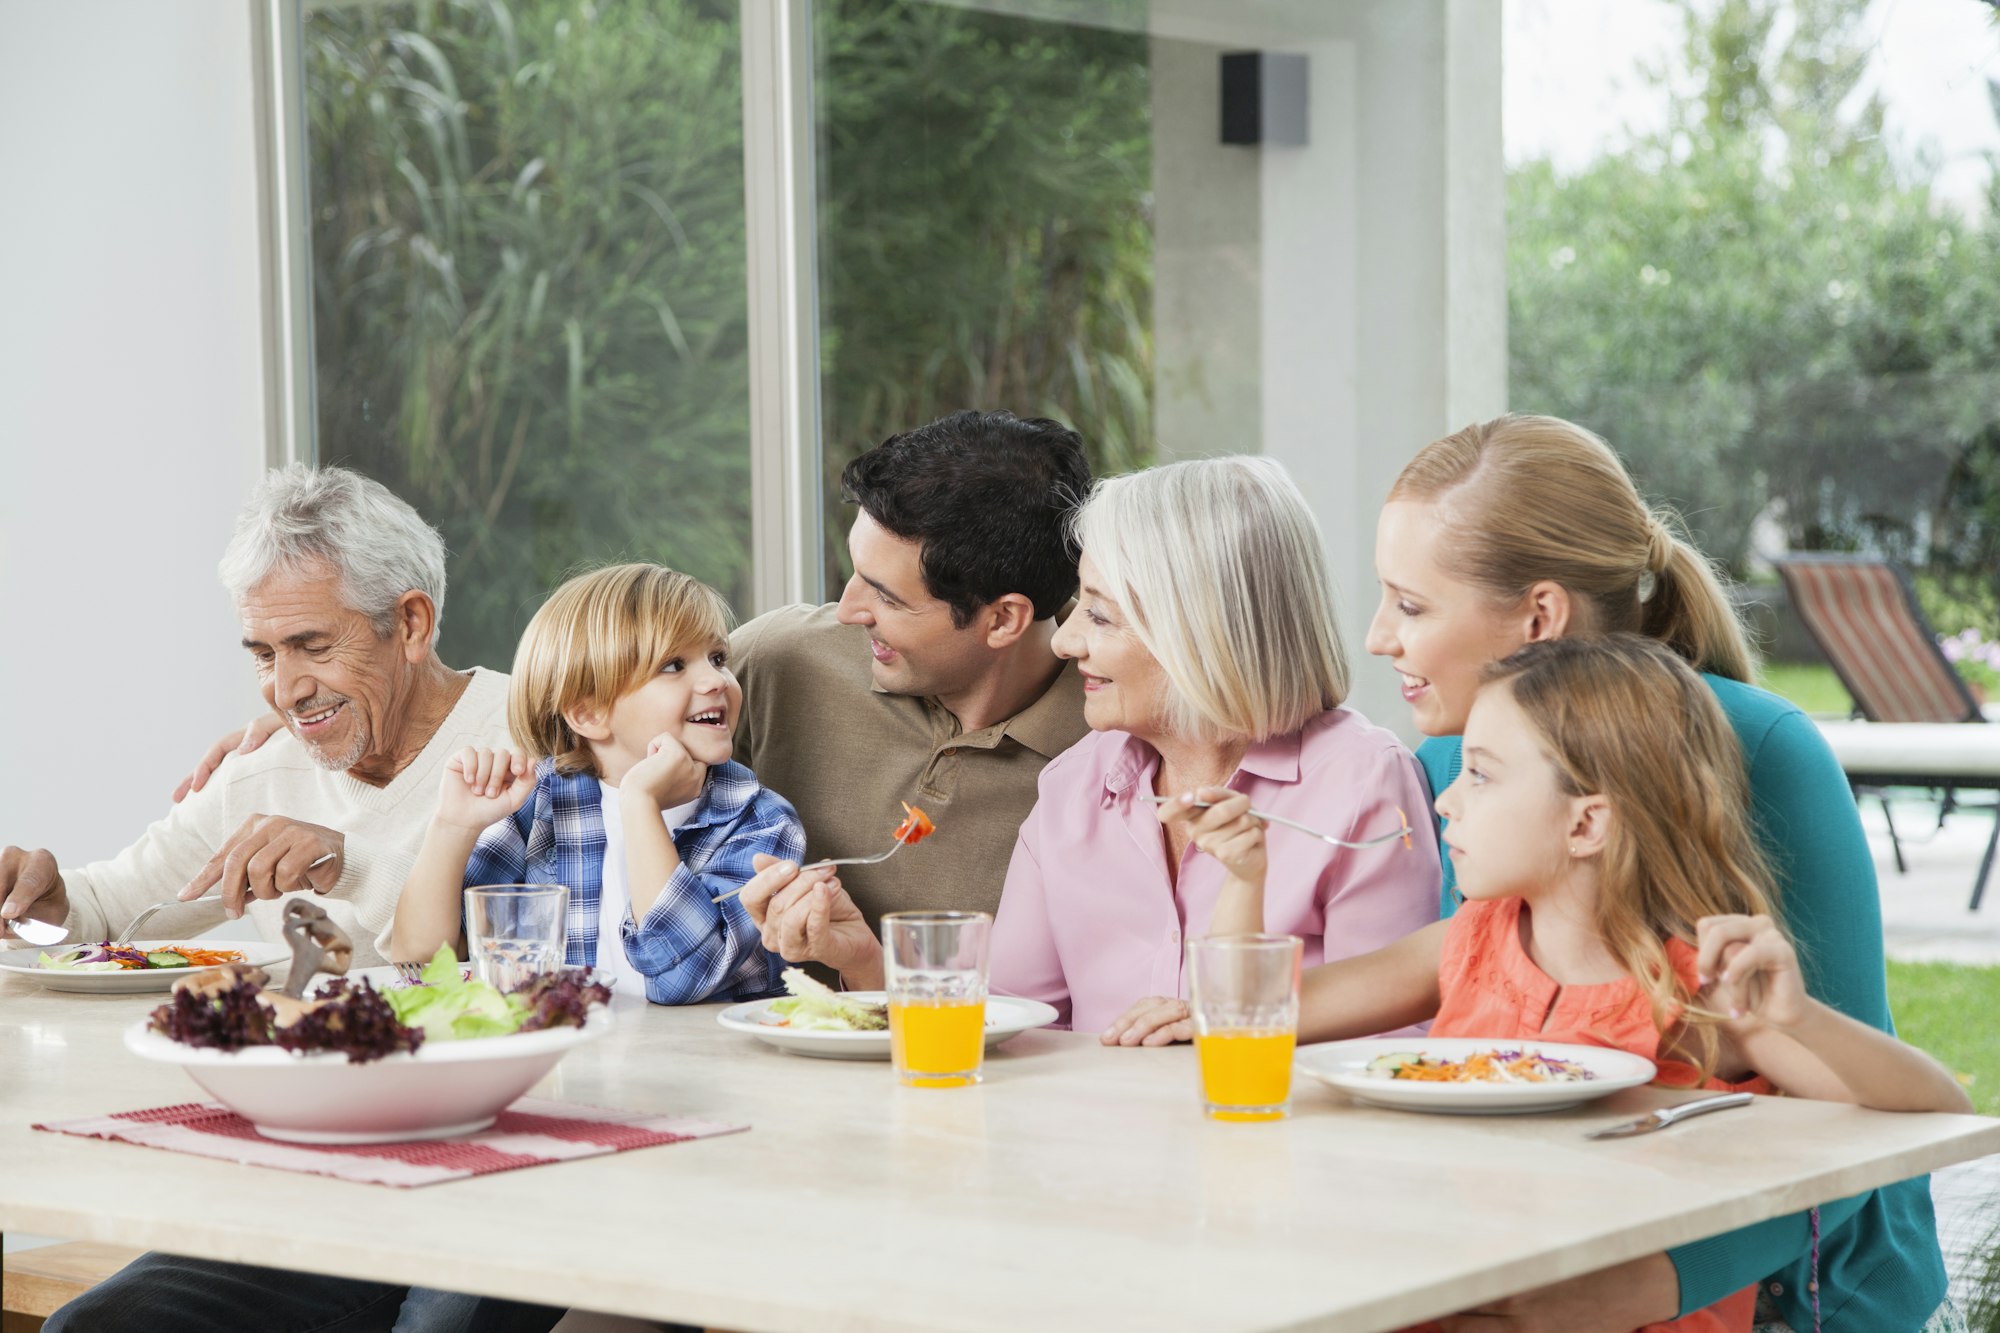 Tables à manger pour famille nombreuse : les critères à prendre en compte pour faire le choix idéal.